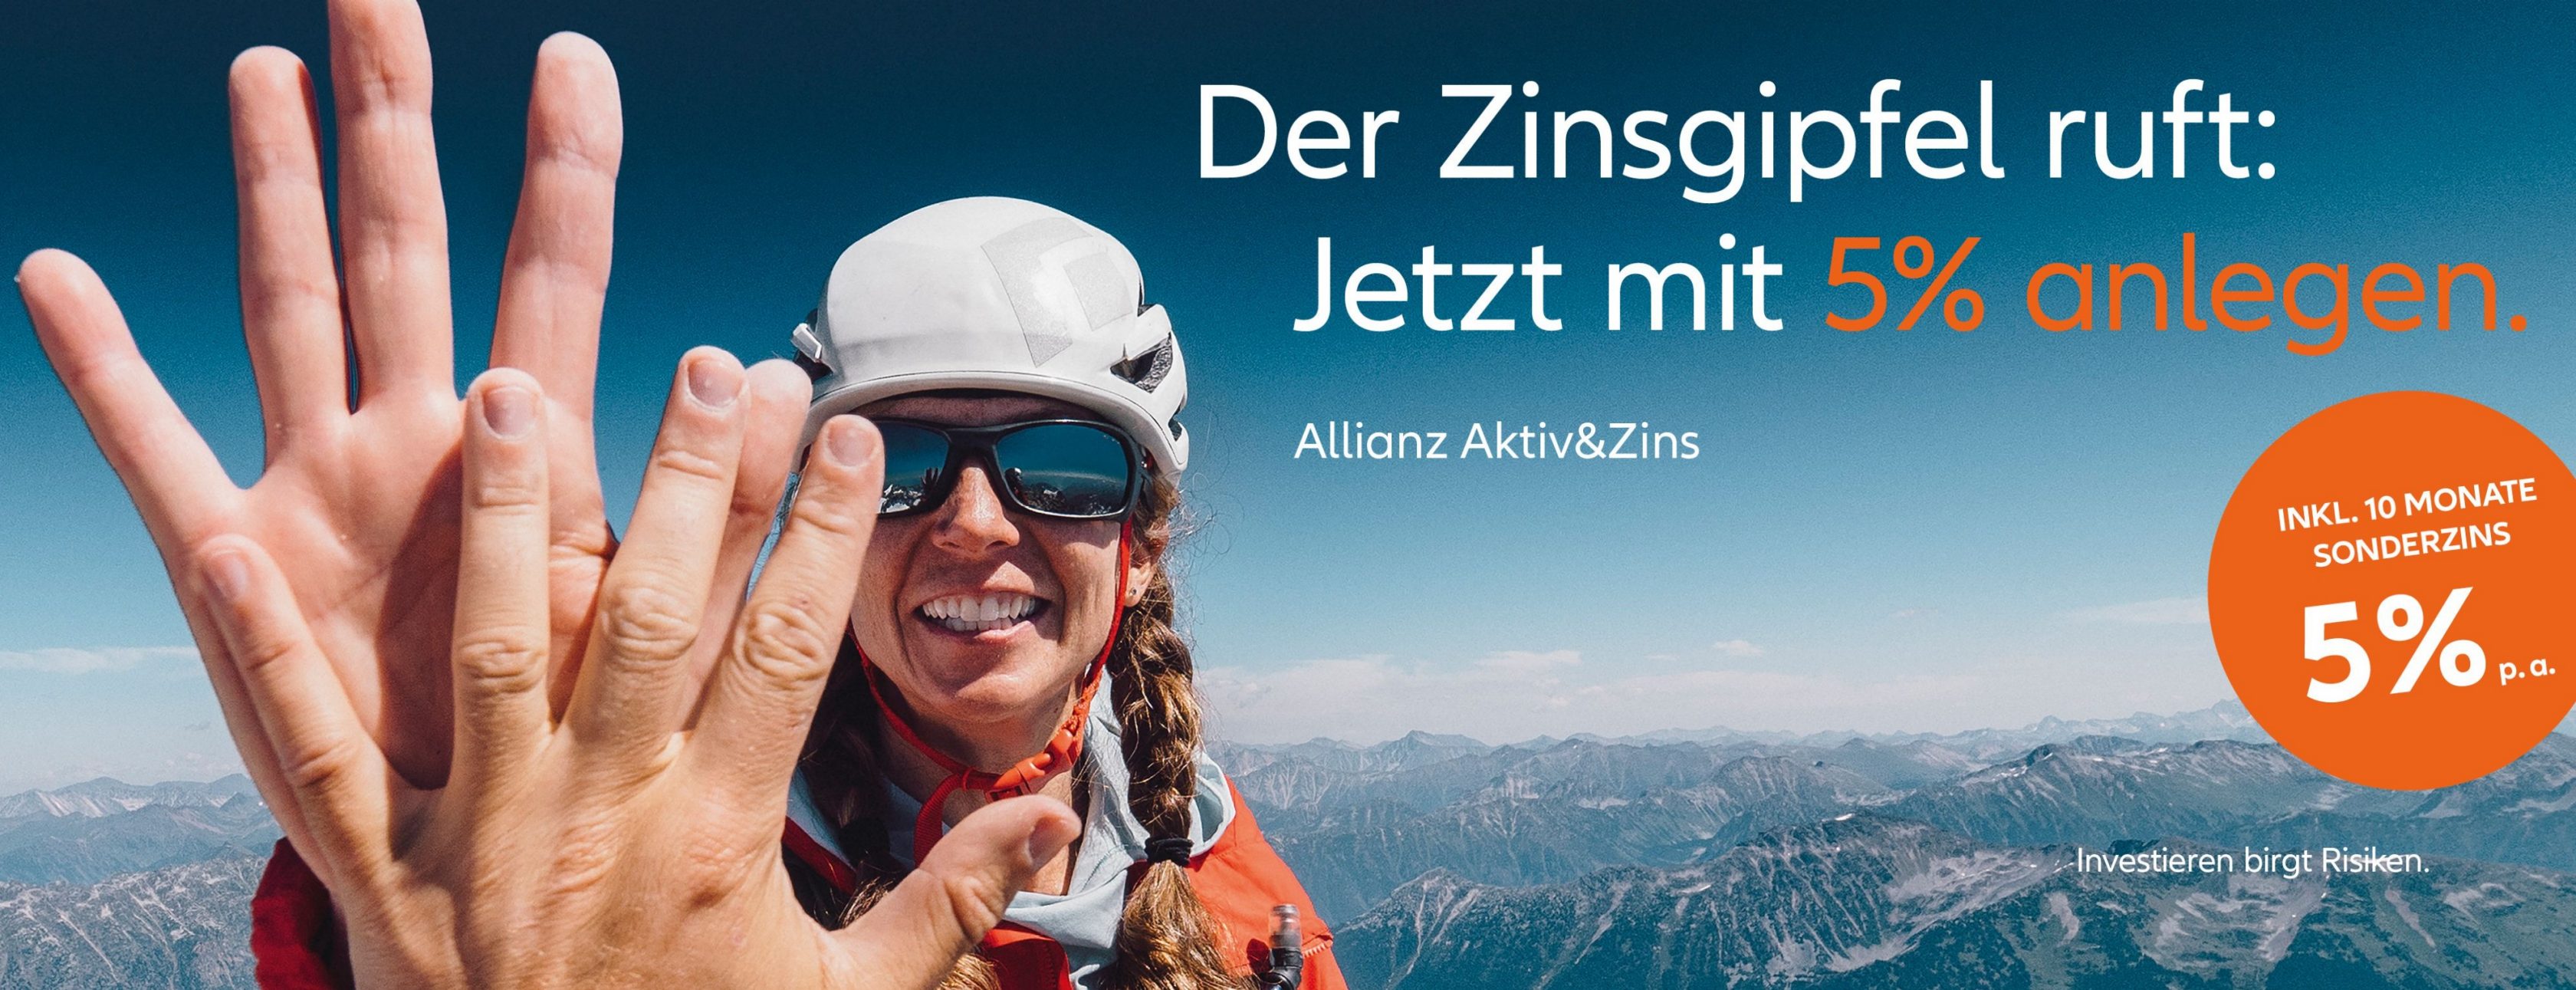 Allianz Versicherung Janine Möbius Köthen Anhalt - High Five,Handzeichen,Geldanlage,5 %,Frau,Gipfel